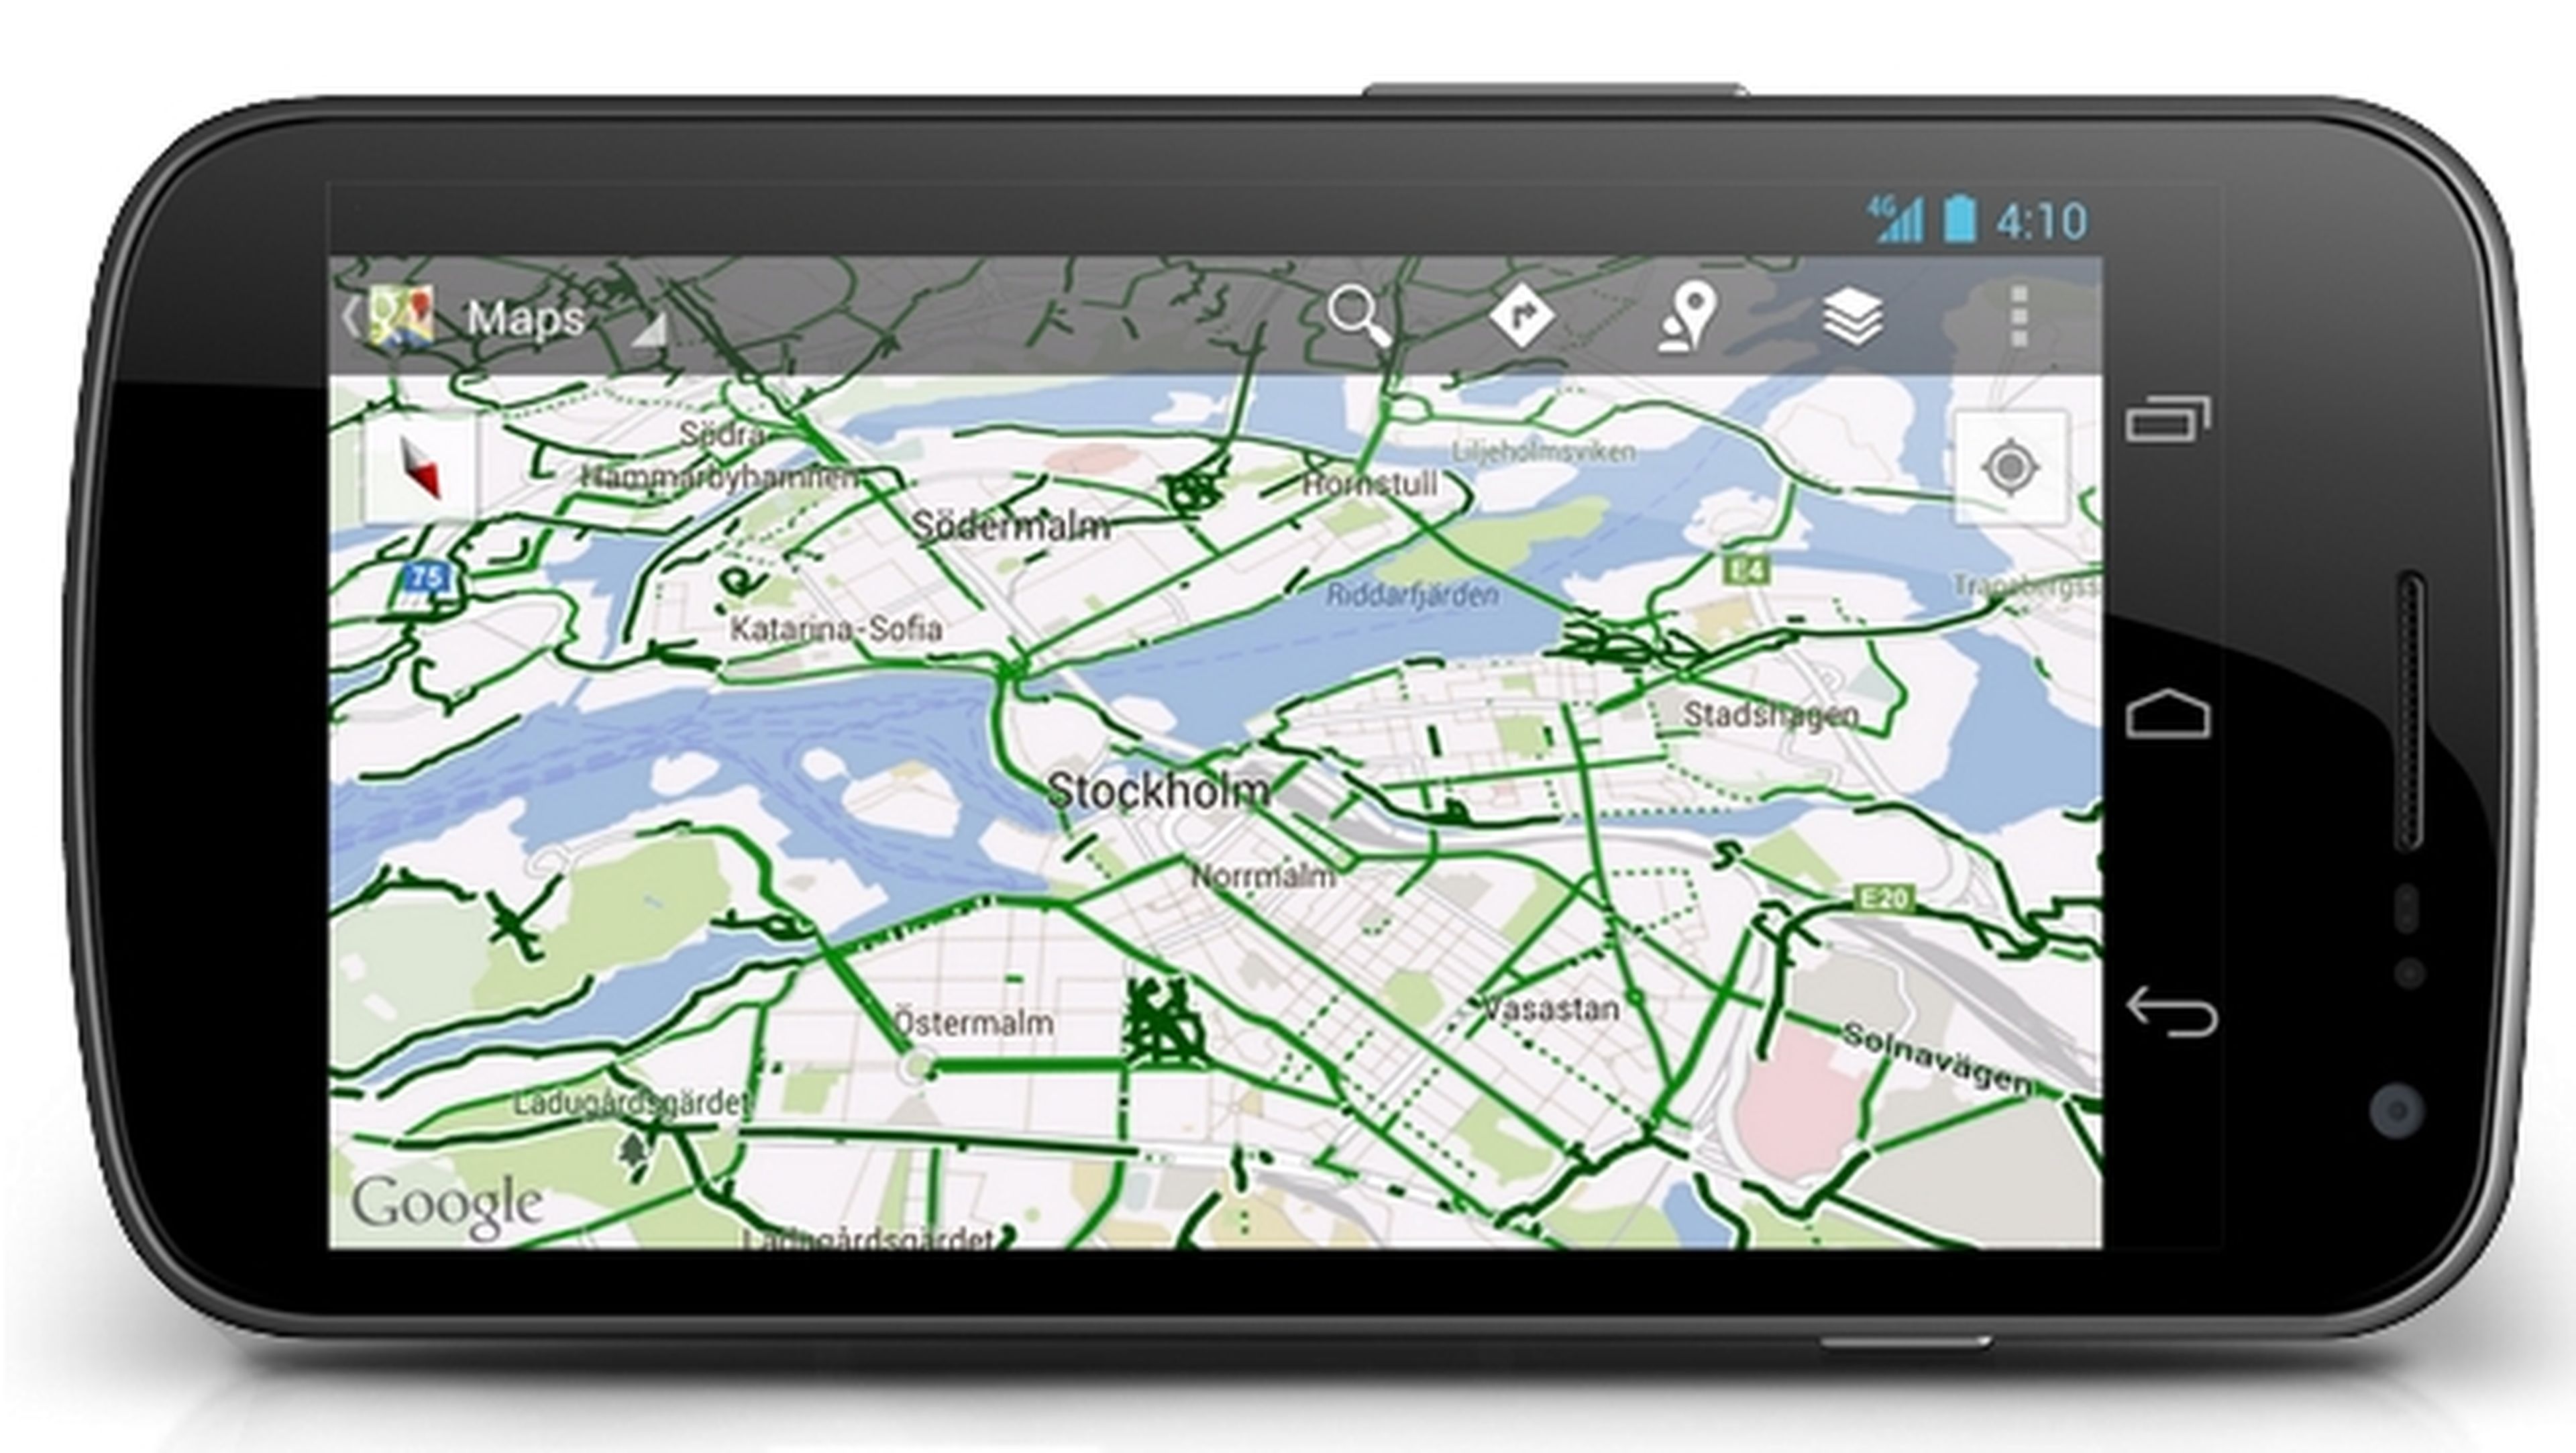 La actualización de Google Maps añade comandos de voz, compatibilidad con Android Wear y nueva info, como la altitud, para bikers.